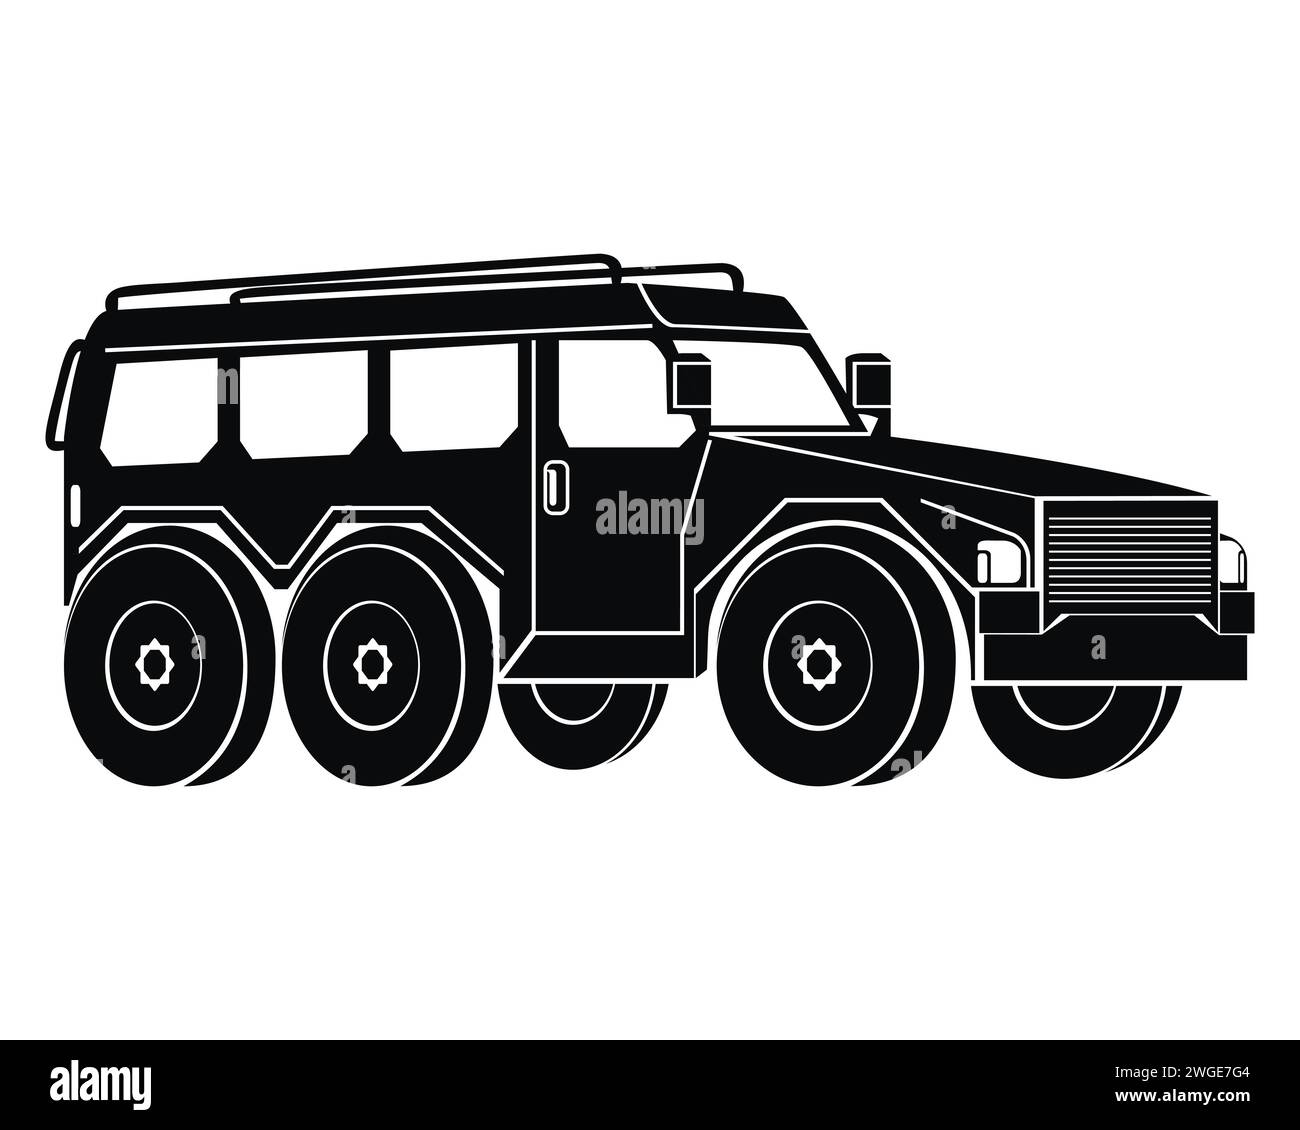 Silhouette eines gepanzerten Militärfahrzeugs. Schwarzes Symbol. Kriegs- und Armeesymbole. Vektorillustration isoliert auf weißem Hintergrund. Stock Vektor